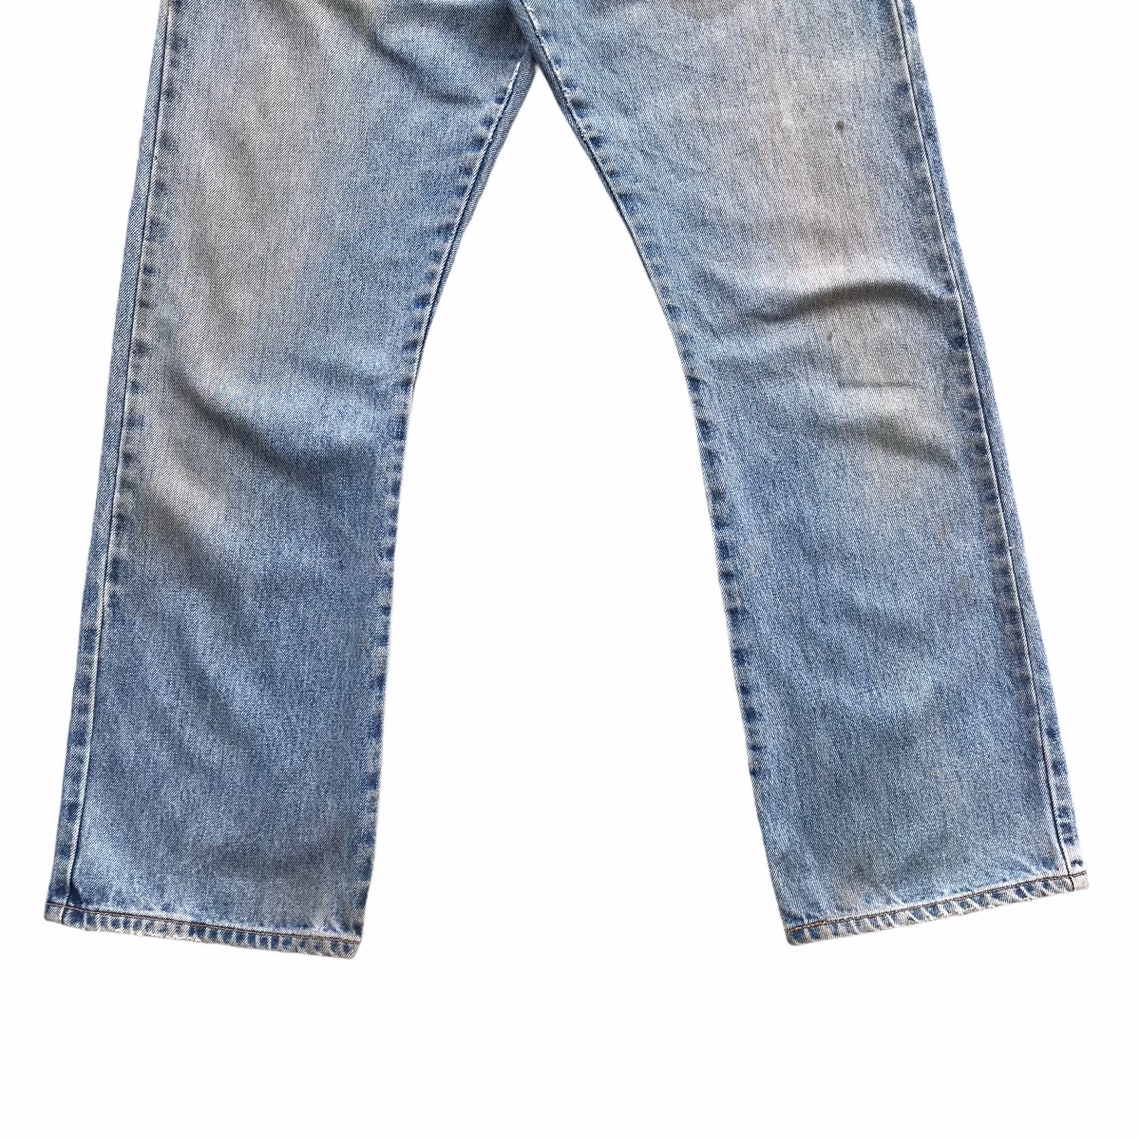 Vintage 90s Levis 517 Boot Cut Jeans Distressed Denim Blue | Etsy